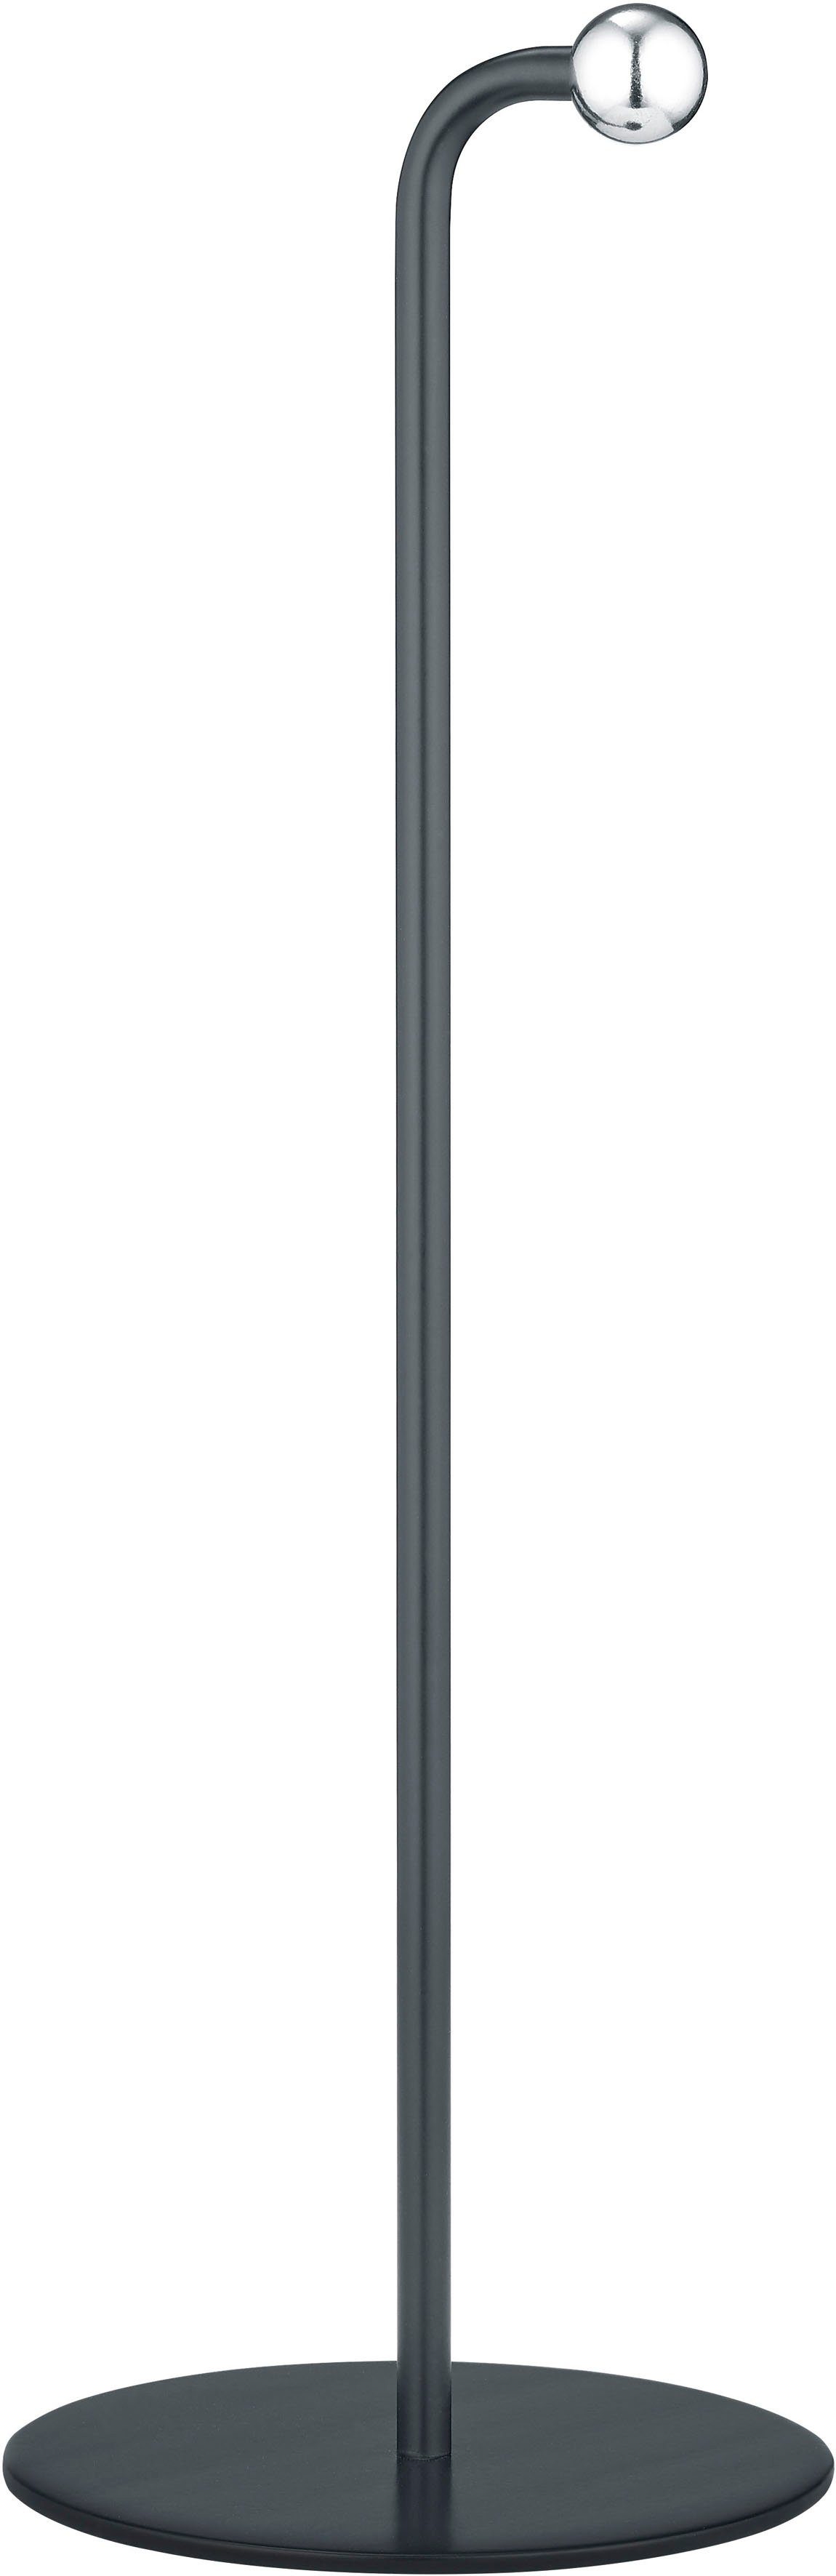 TRIO Leuchten LED Tischleuchte Maxi, Dimmfunktion, USB-Anschluss mit  Ladefunktion, LED fest integriert, Warmweiß, Klemmleuchte mit  Magnet-Halterung, Touchdimmer, USB-C, 2-12h Akku, 4-fach Touch Dimmer  Funktion